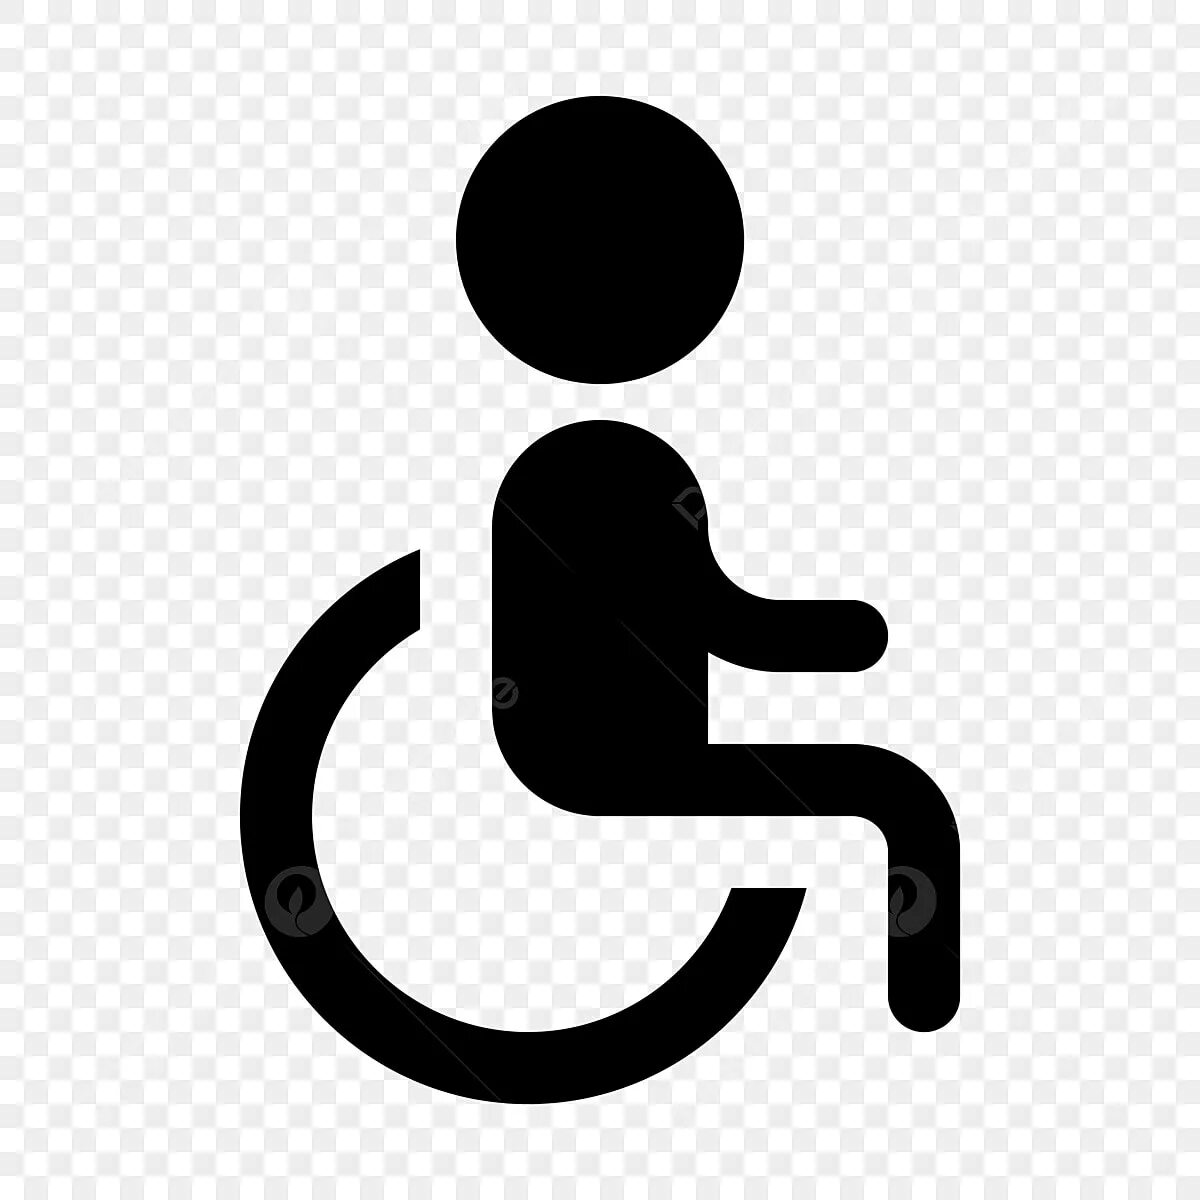 Знак инвалидной коляски. Инвалид иконка. Ребенок инвалид иконка. Значок инвалида на коляске. Инвалидная коляска пиктограмма.